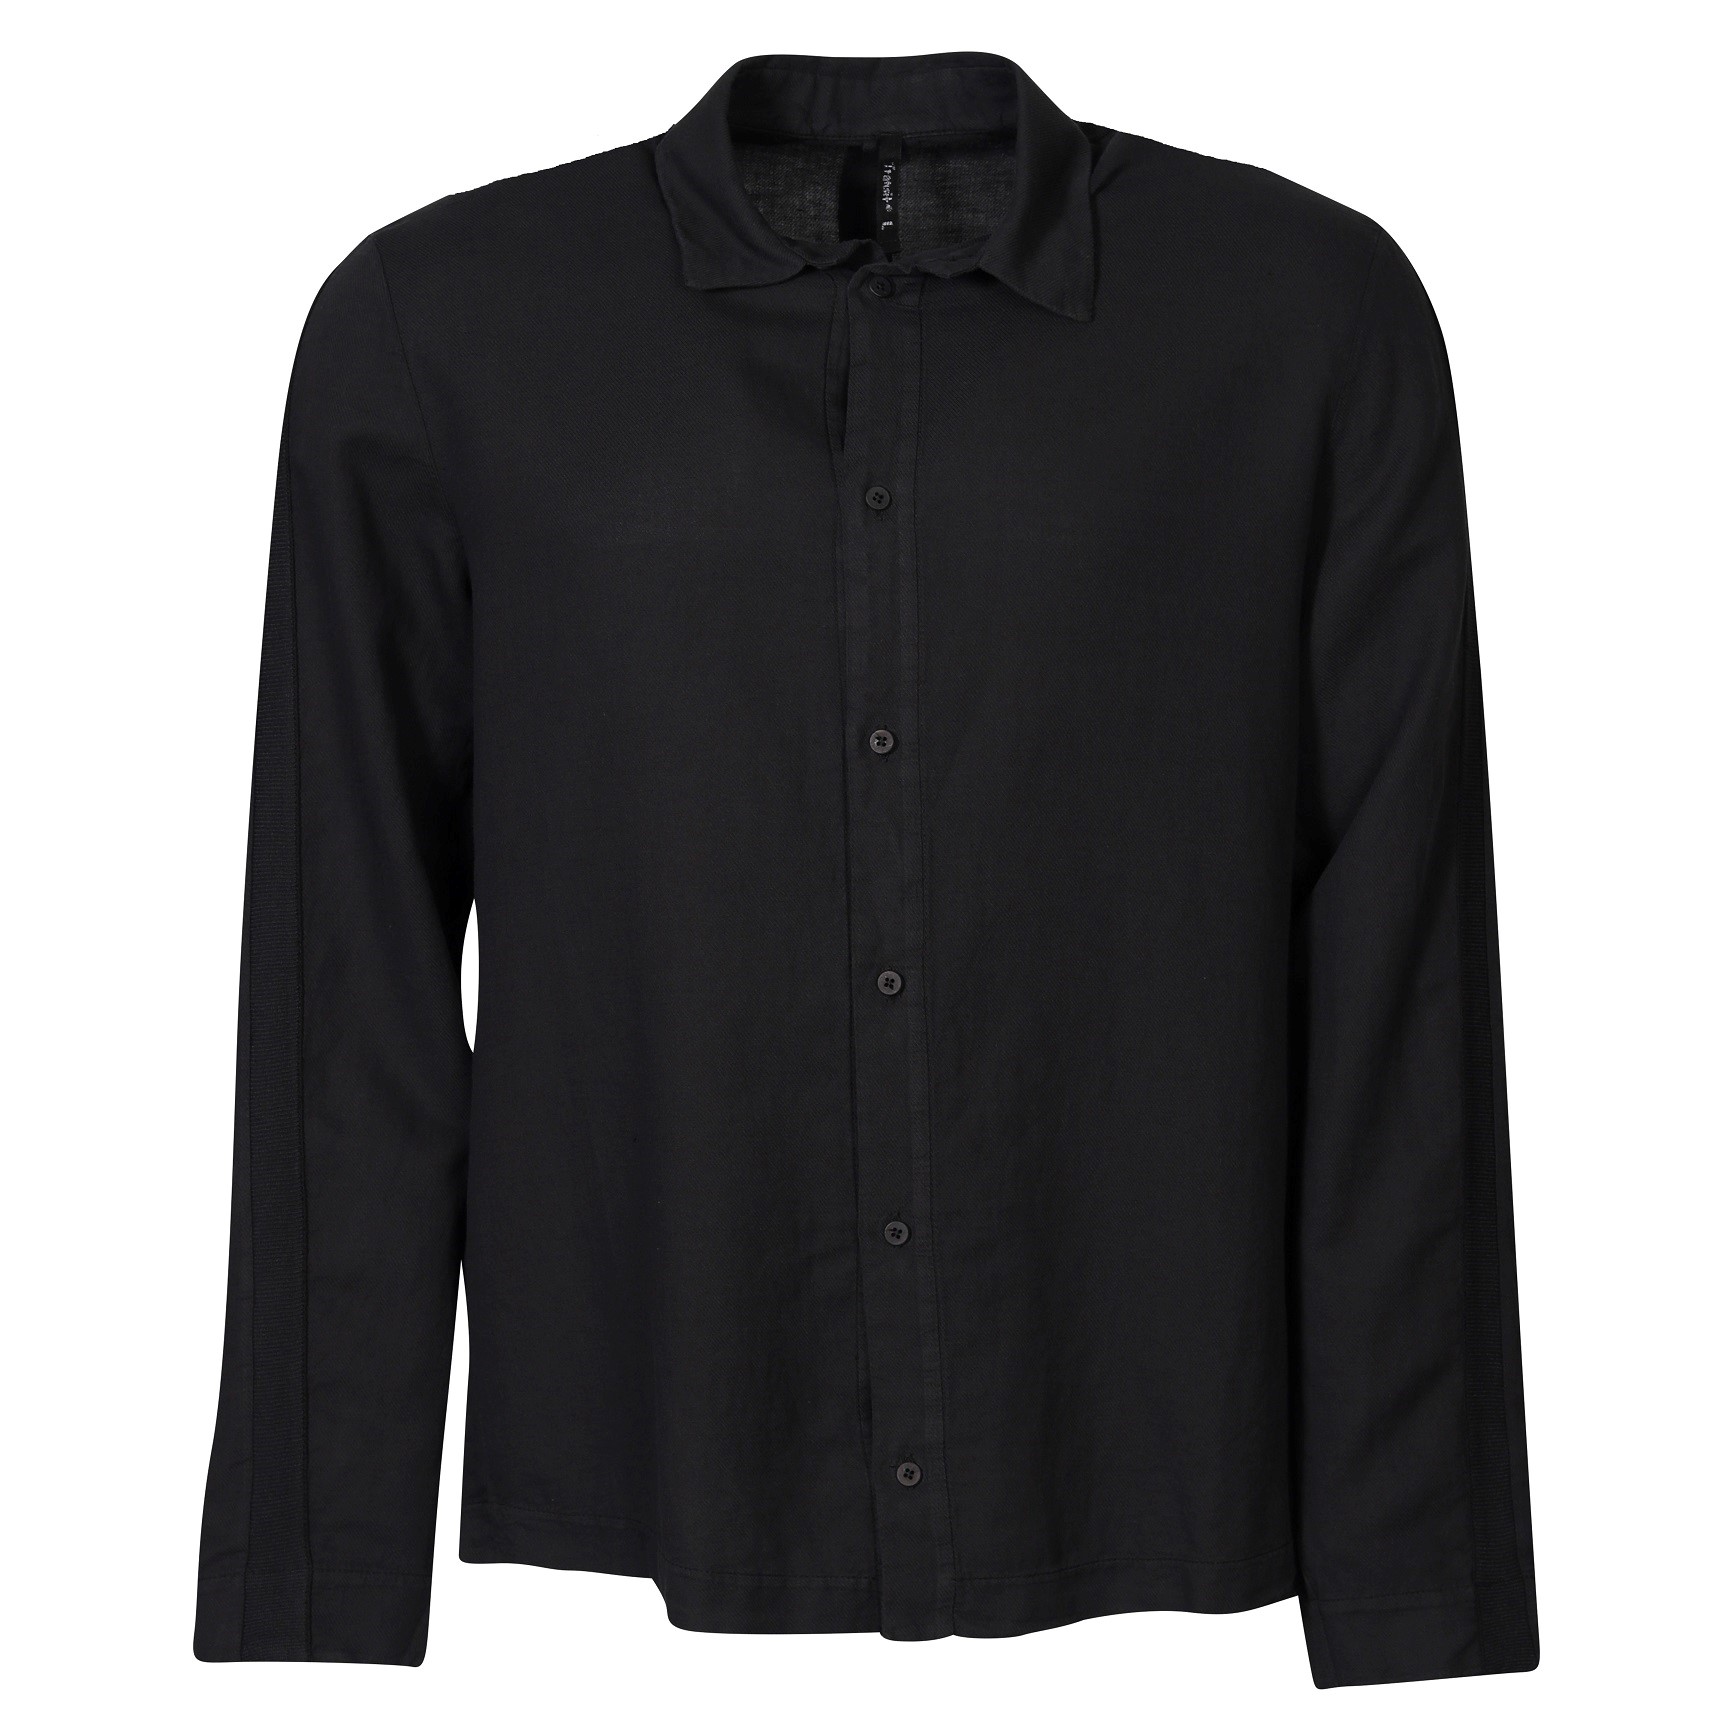 TRANSIT UOMO Cotton Linen Shirt in Black 3XL